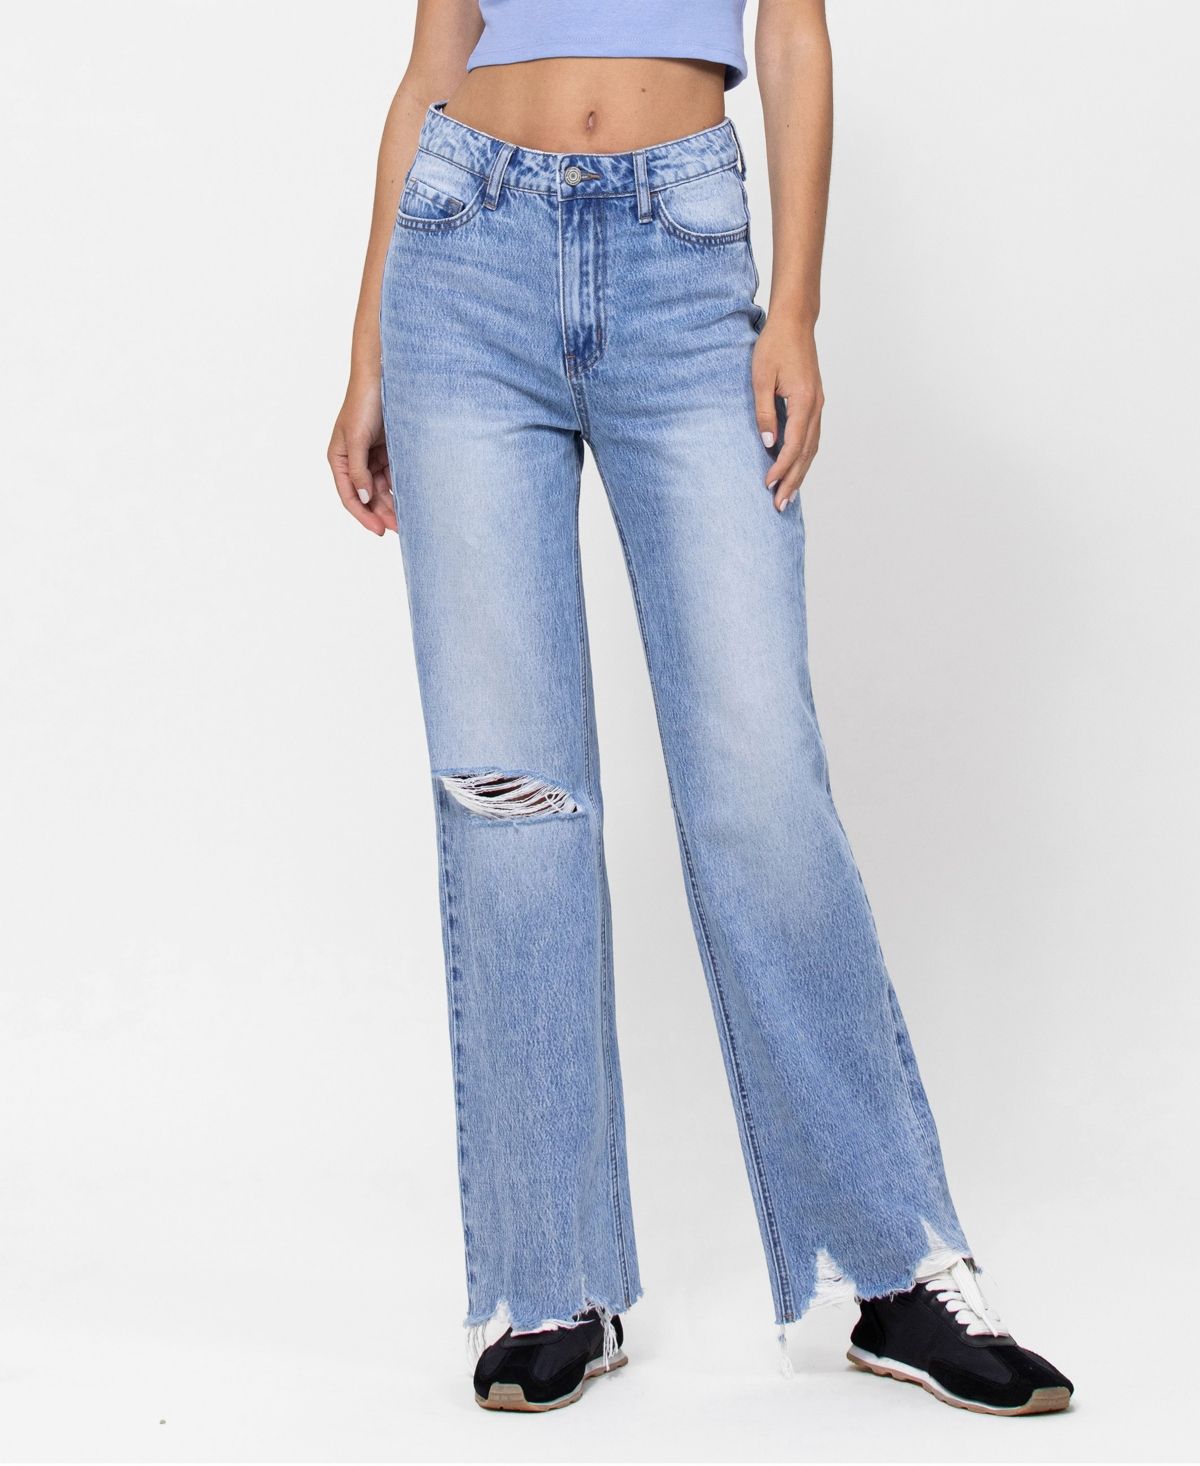 Women's 90's Vintage-Like Ankle Jeans | Macys (US)